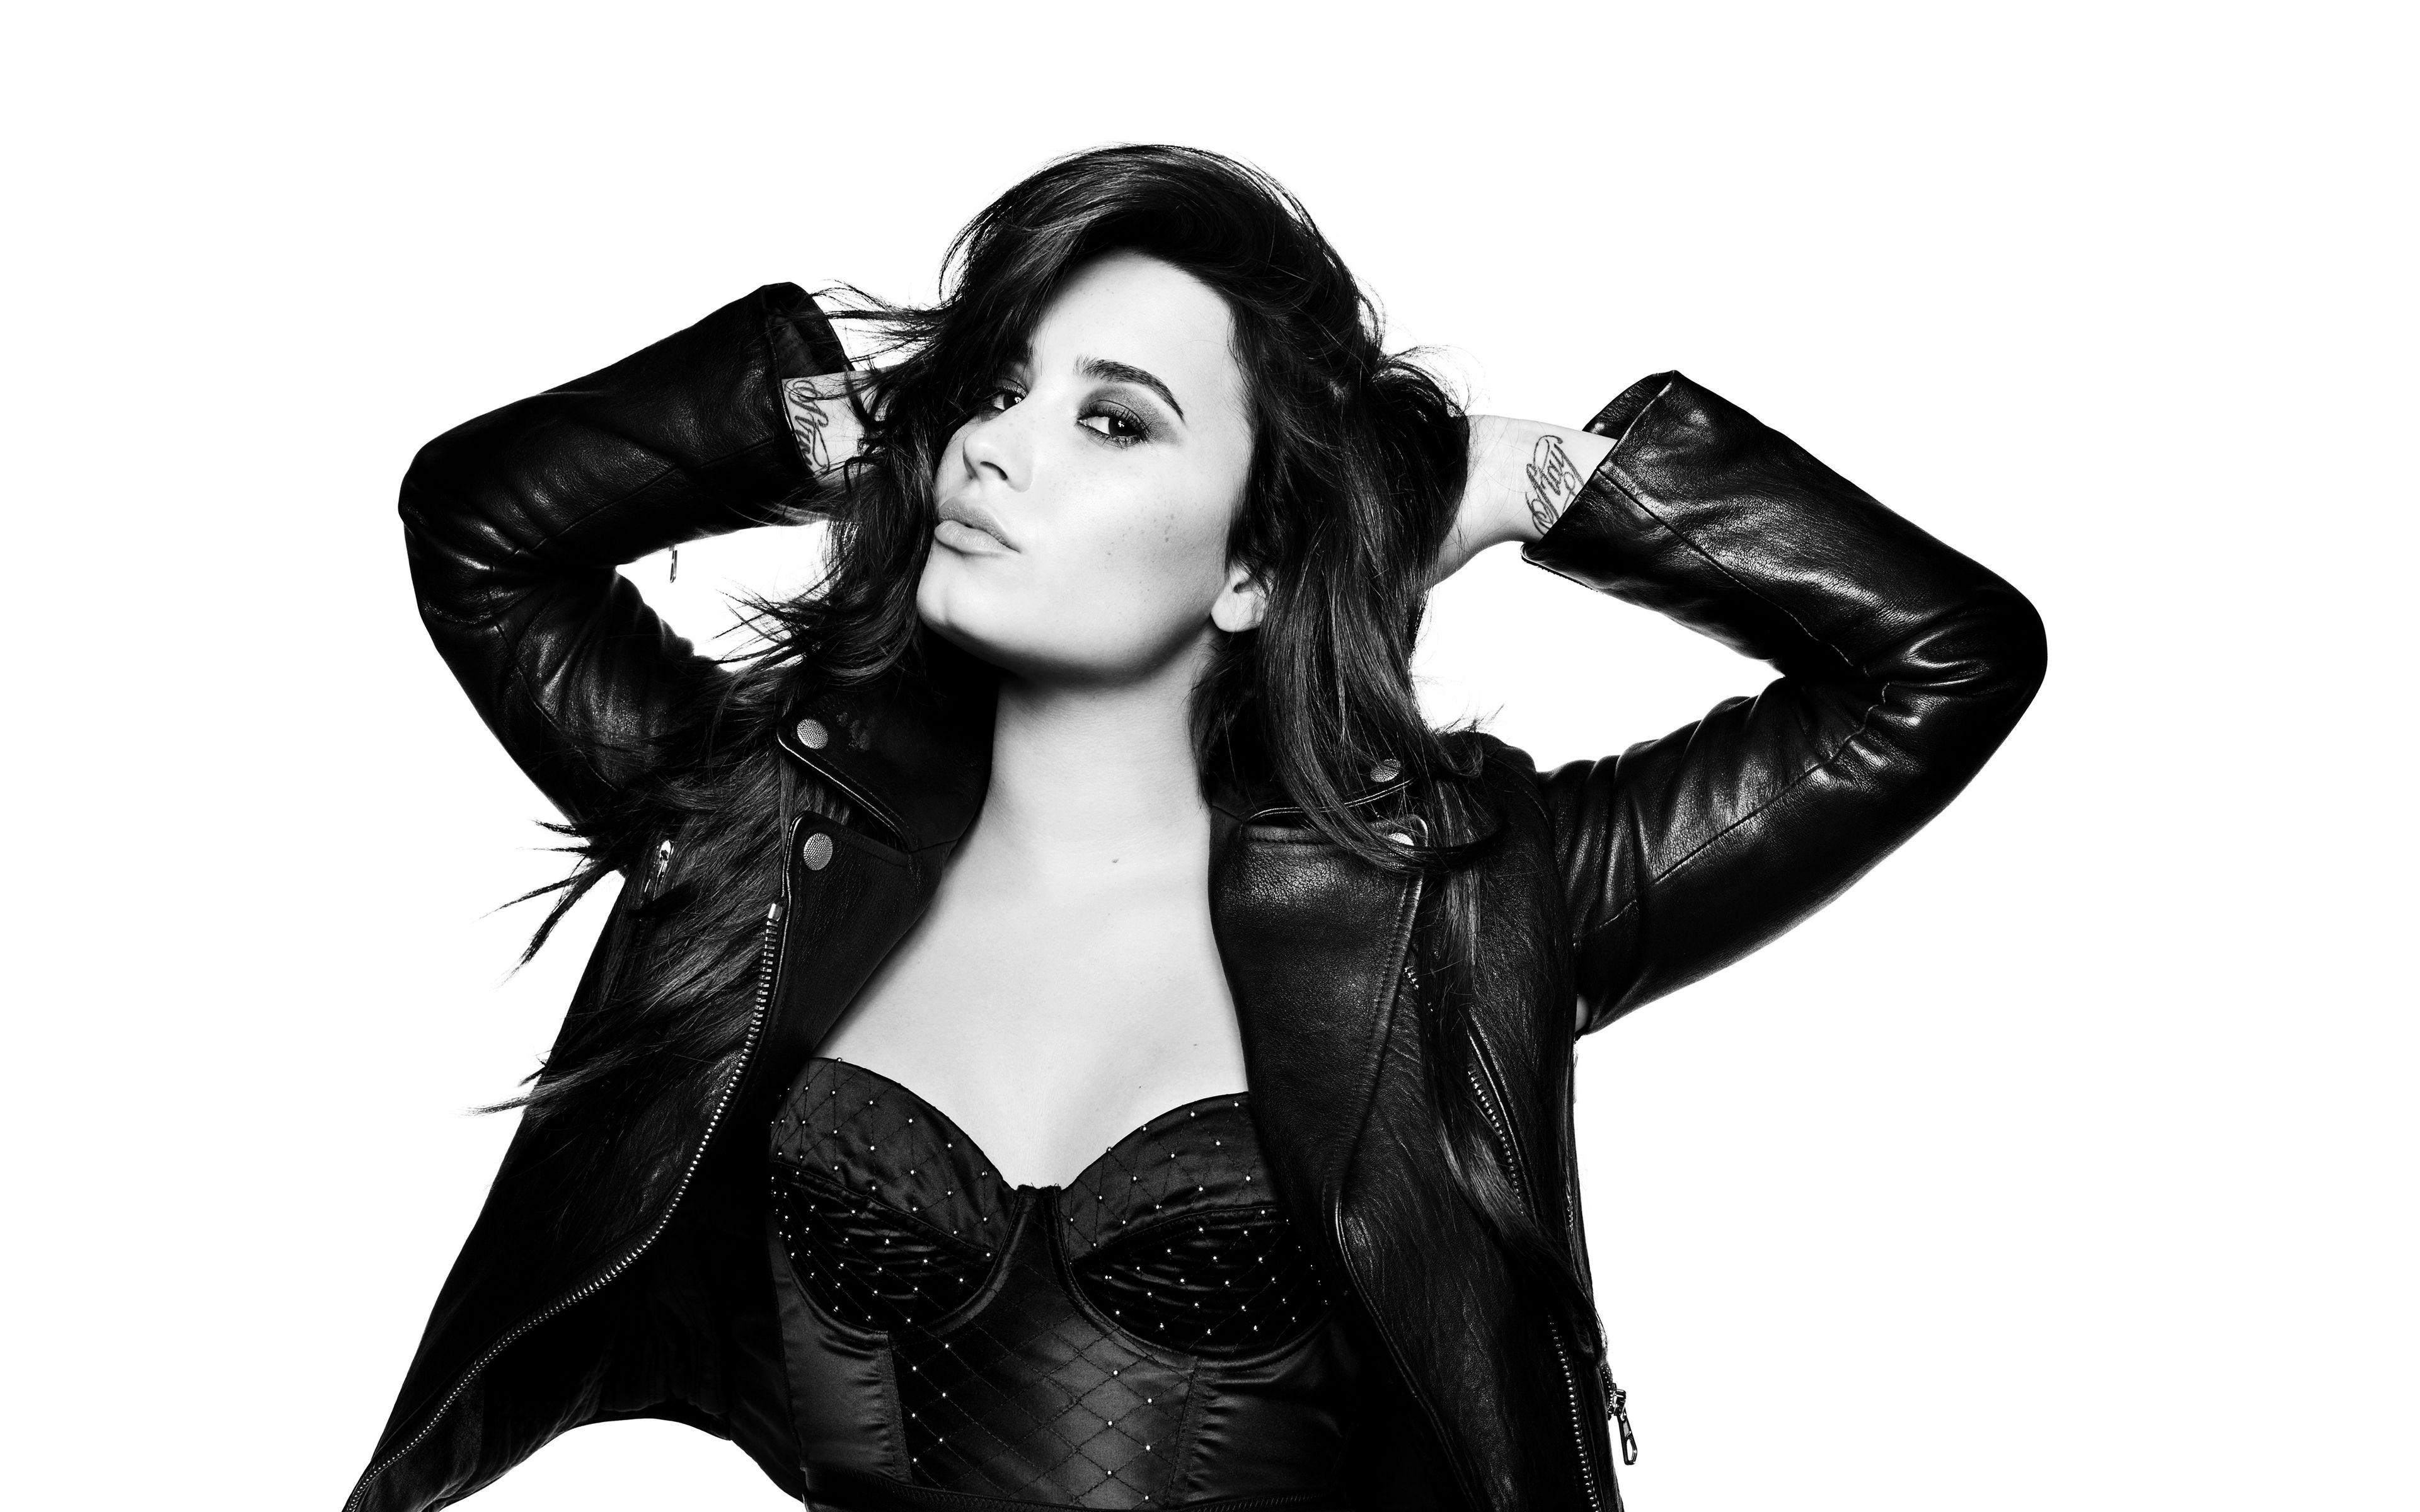 Download Demi Lovato 2018 Monochrome 320x240 Resolution, HD 4K.